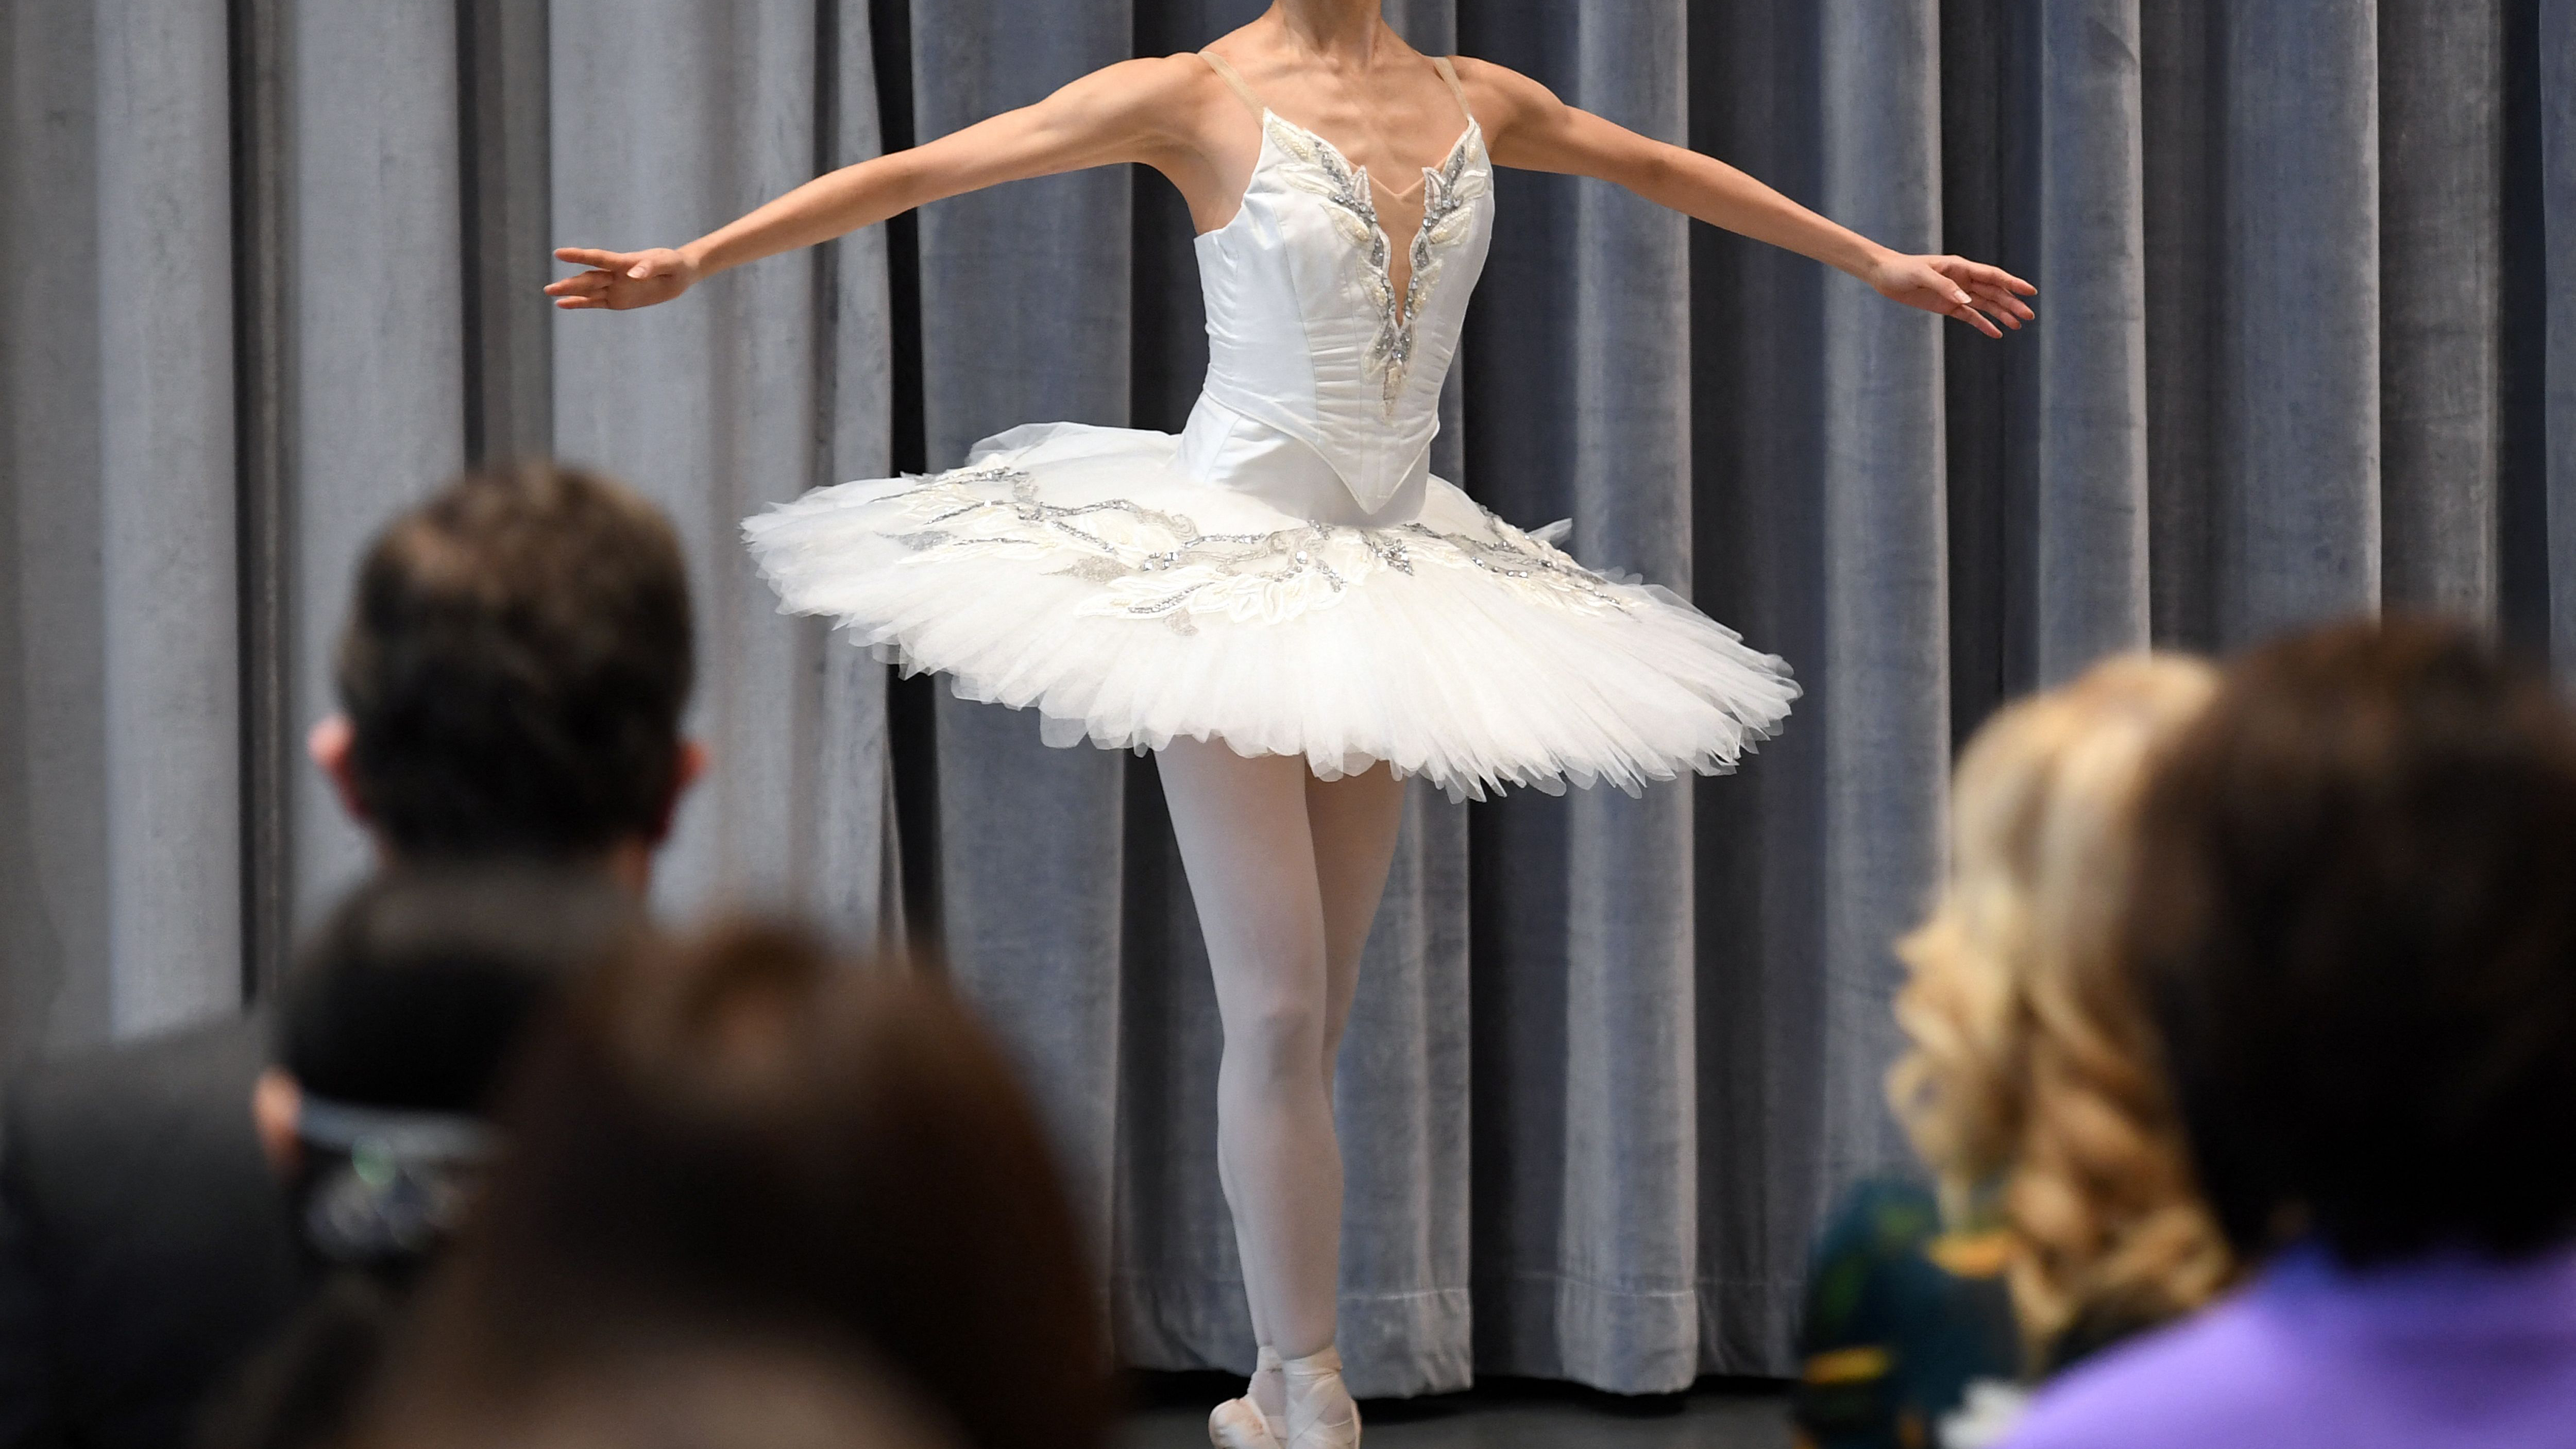 Tutu de Ballet professionnel W-006